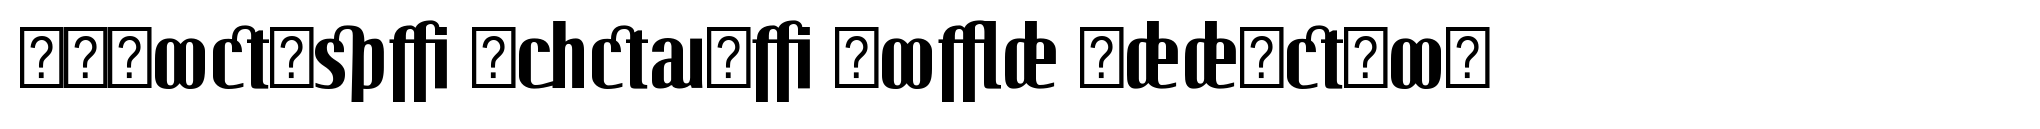 Linotype Octane Bold Addition image